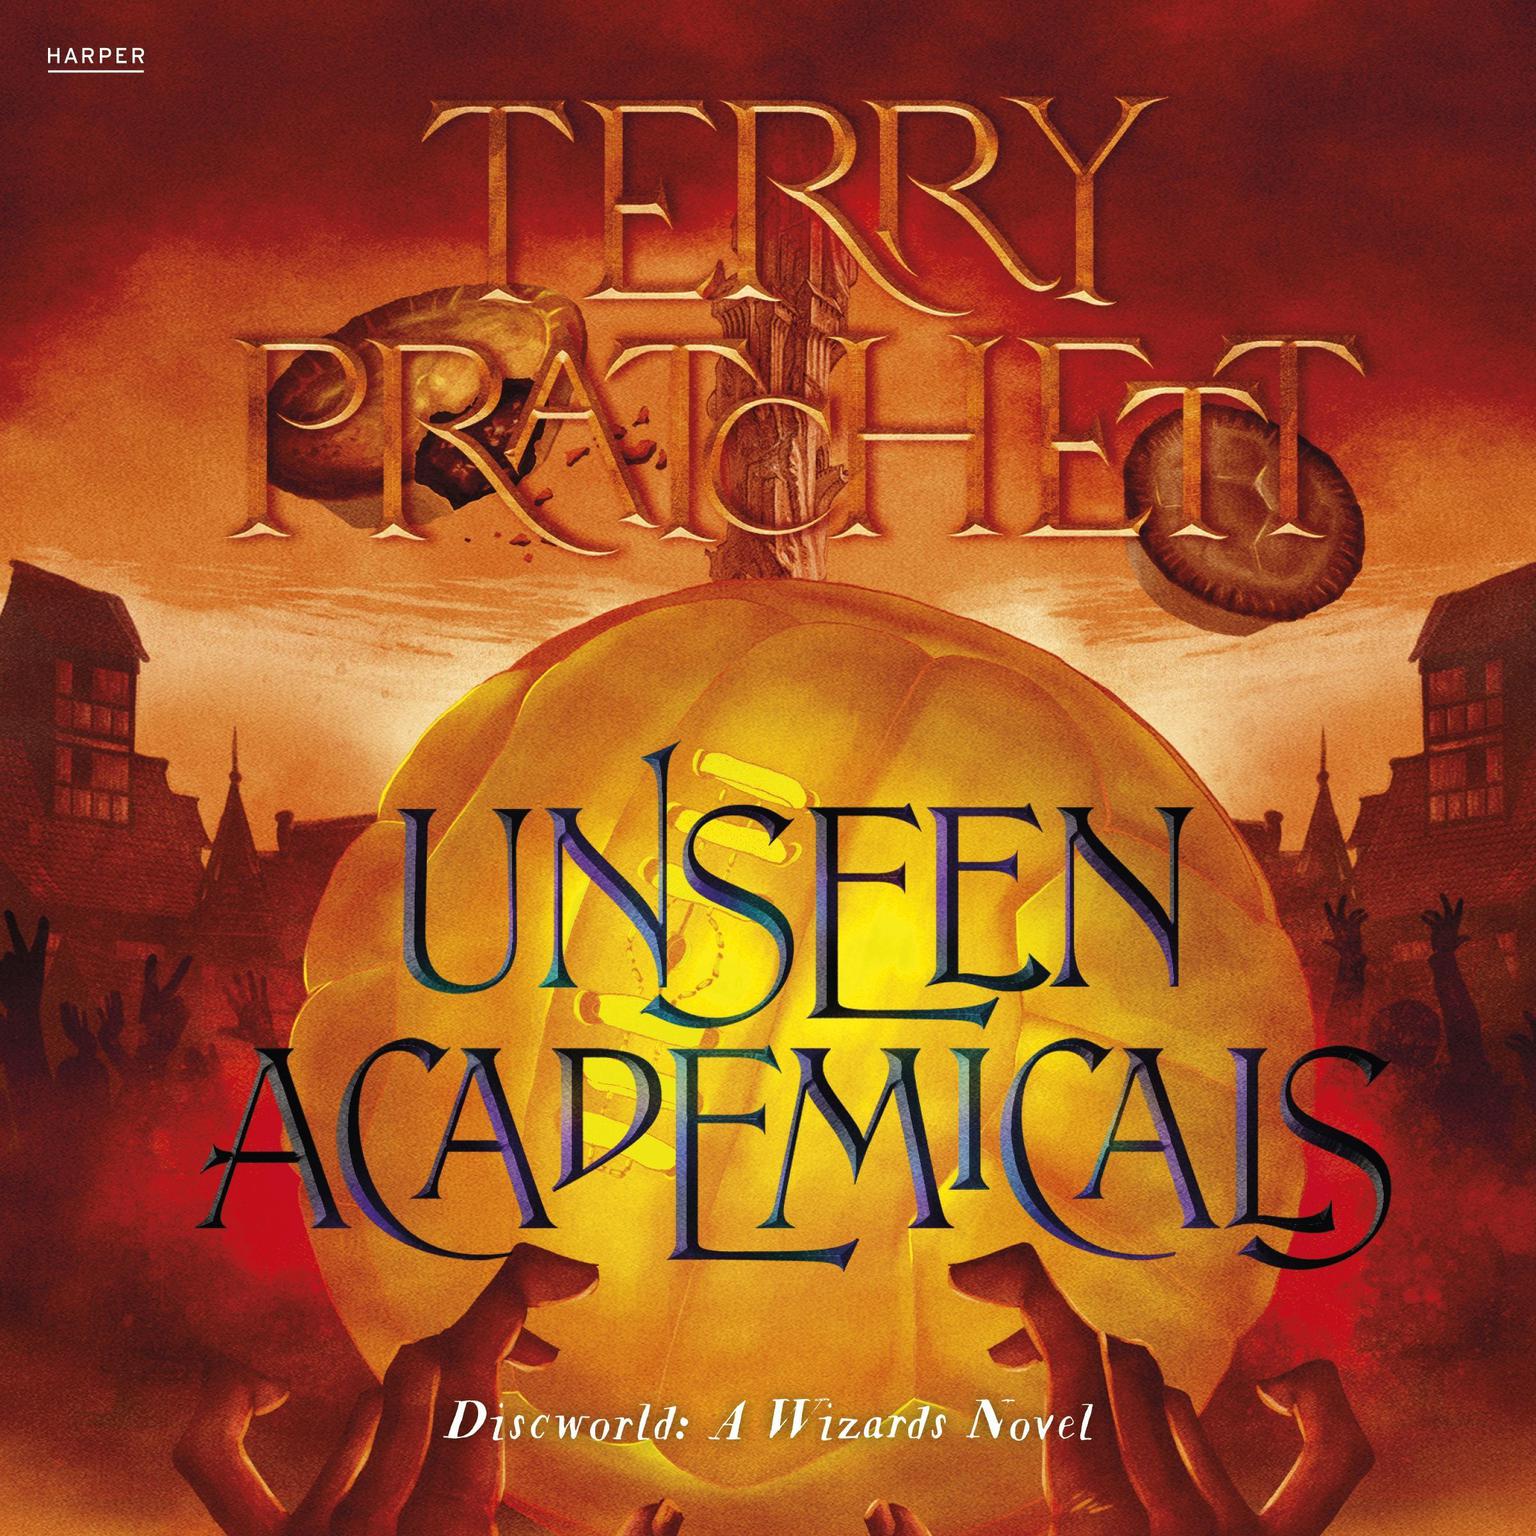 Unseen Academicals: A Discworld Novel Audiobook, by Terry Pratchett